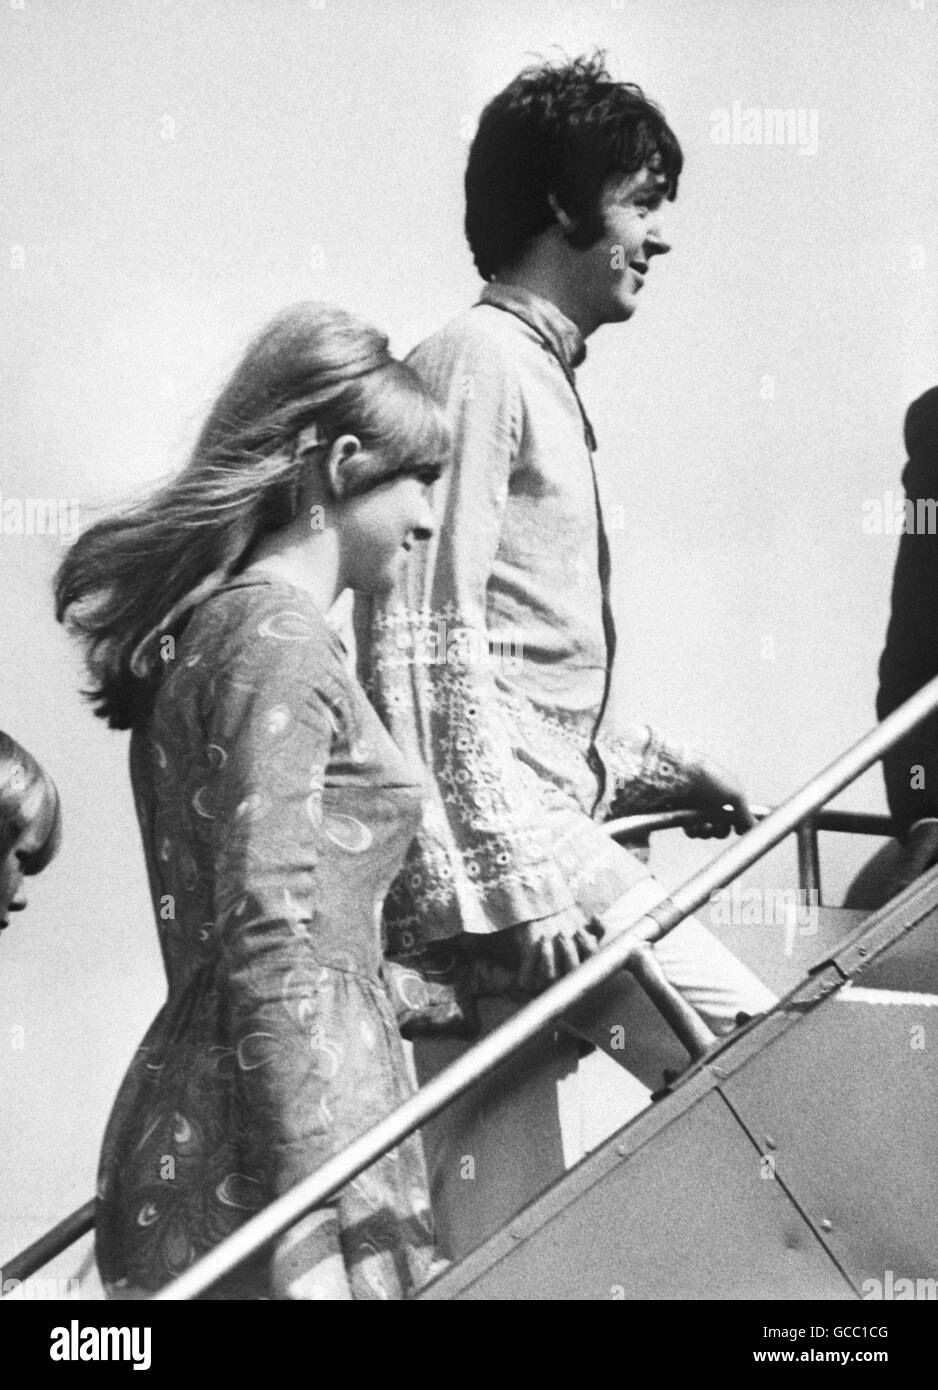 Paul McCartney, dei Beatles, in una tunica ricamata, e la sua fidanzata Jane Asher, salendo a bordo di un aereo di linea all'aeroporto di Heathrow per una vacanza ad Atene, in Grecia. Foto Stock